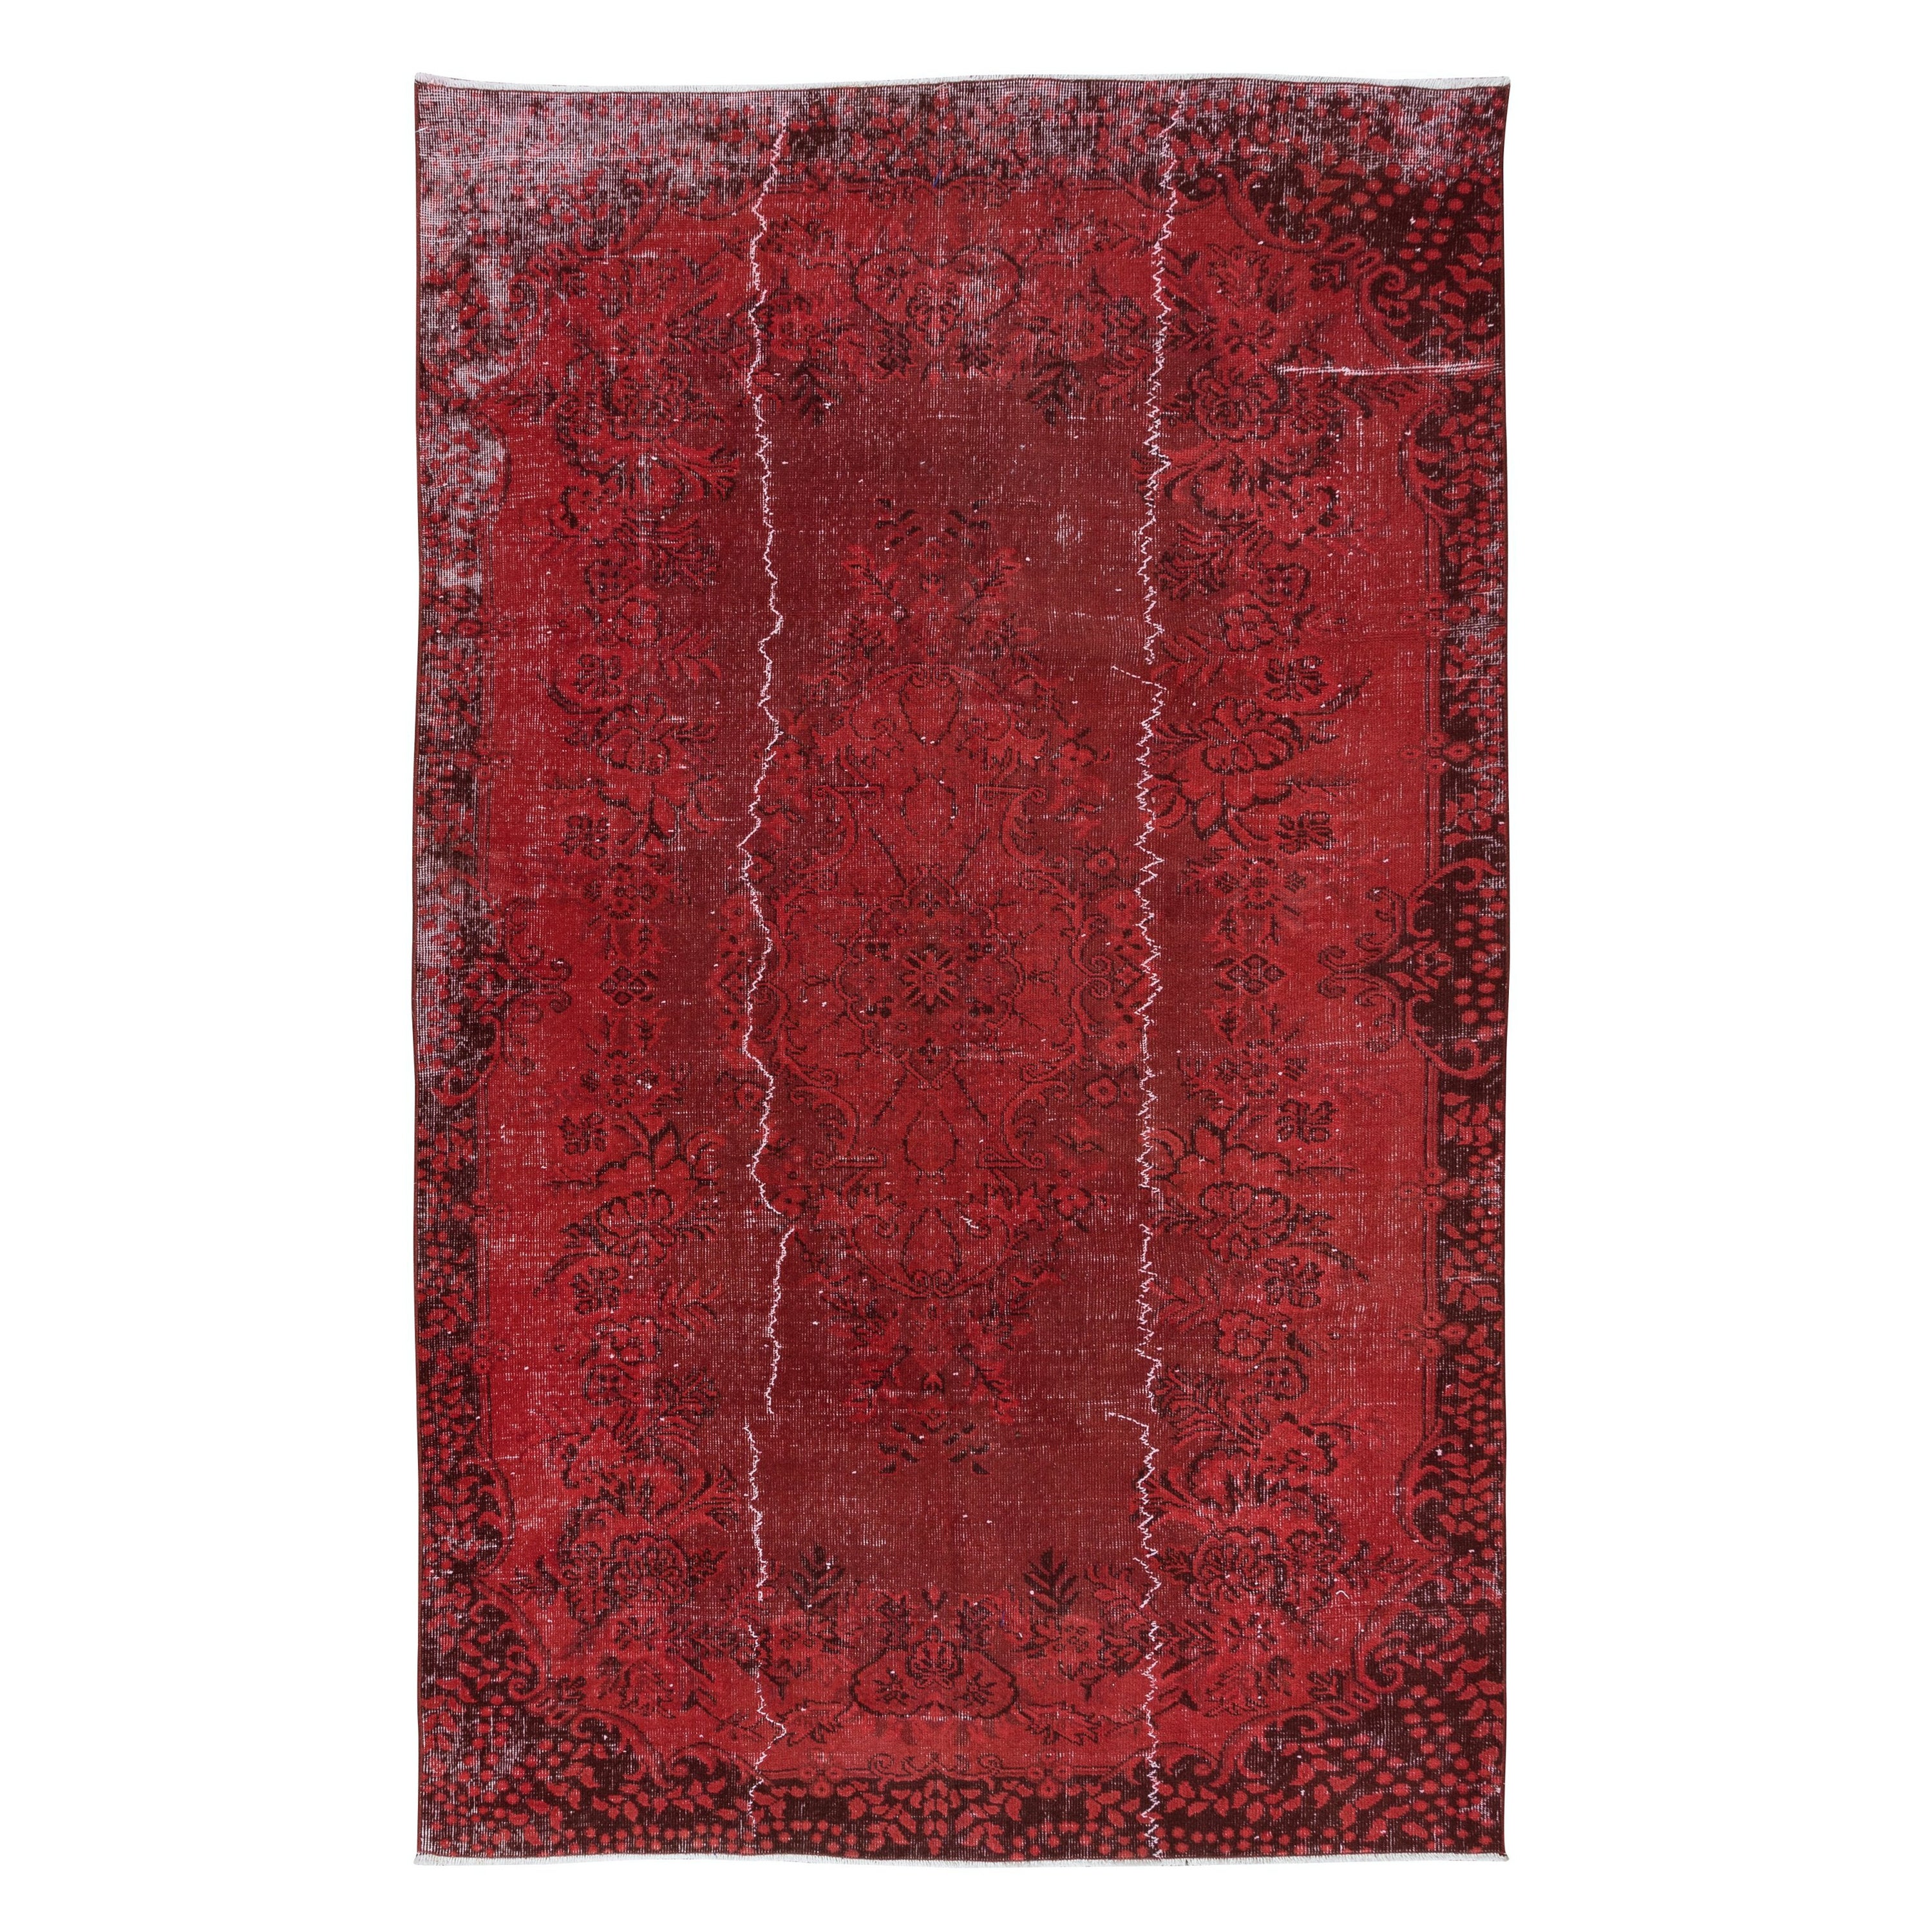 5.5x8.7 Ft Distressed Handmade Dark Red Rug, Türkischer Teppich für Modernes Interieur